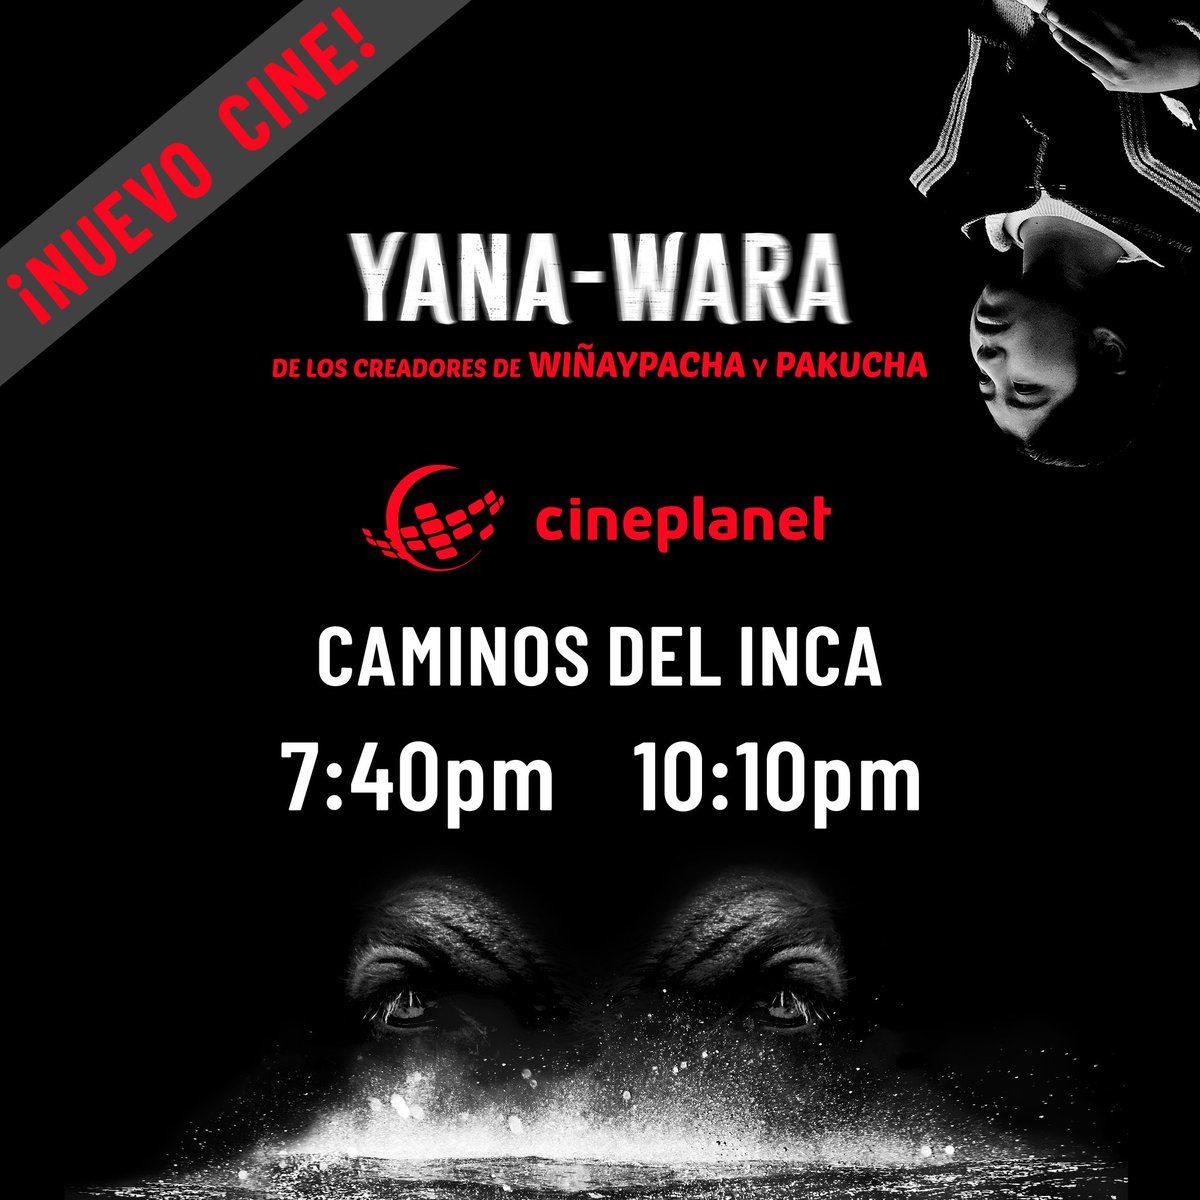 ¡Llegamos con #YanaWara a un nuevo cine en Lima! ❤️🎬 Estamos en @cineplanet Caminos del Inca, en Surco, a las 7:40pm y 10:10pm 🎥✌️ Los invitamos al cine para ver una historia de drama social y terror, en la cultura aymara. 🙂✊ #cineaymara #CinePeruano #cinepuneño #CineAndino